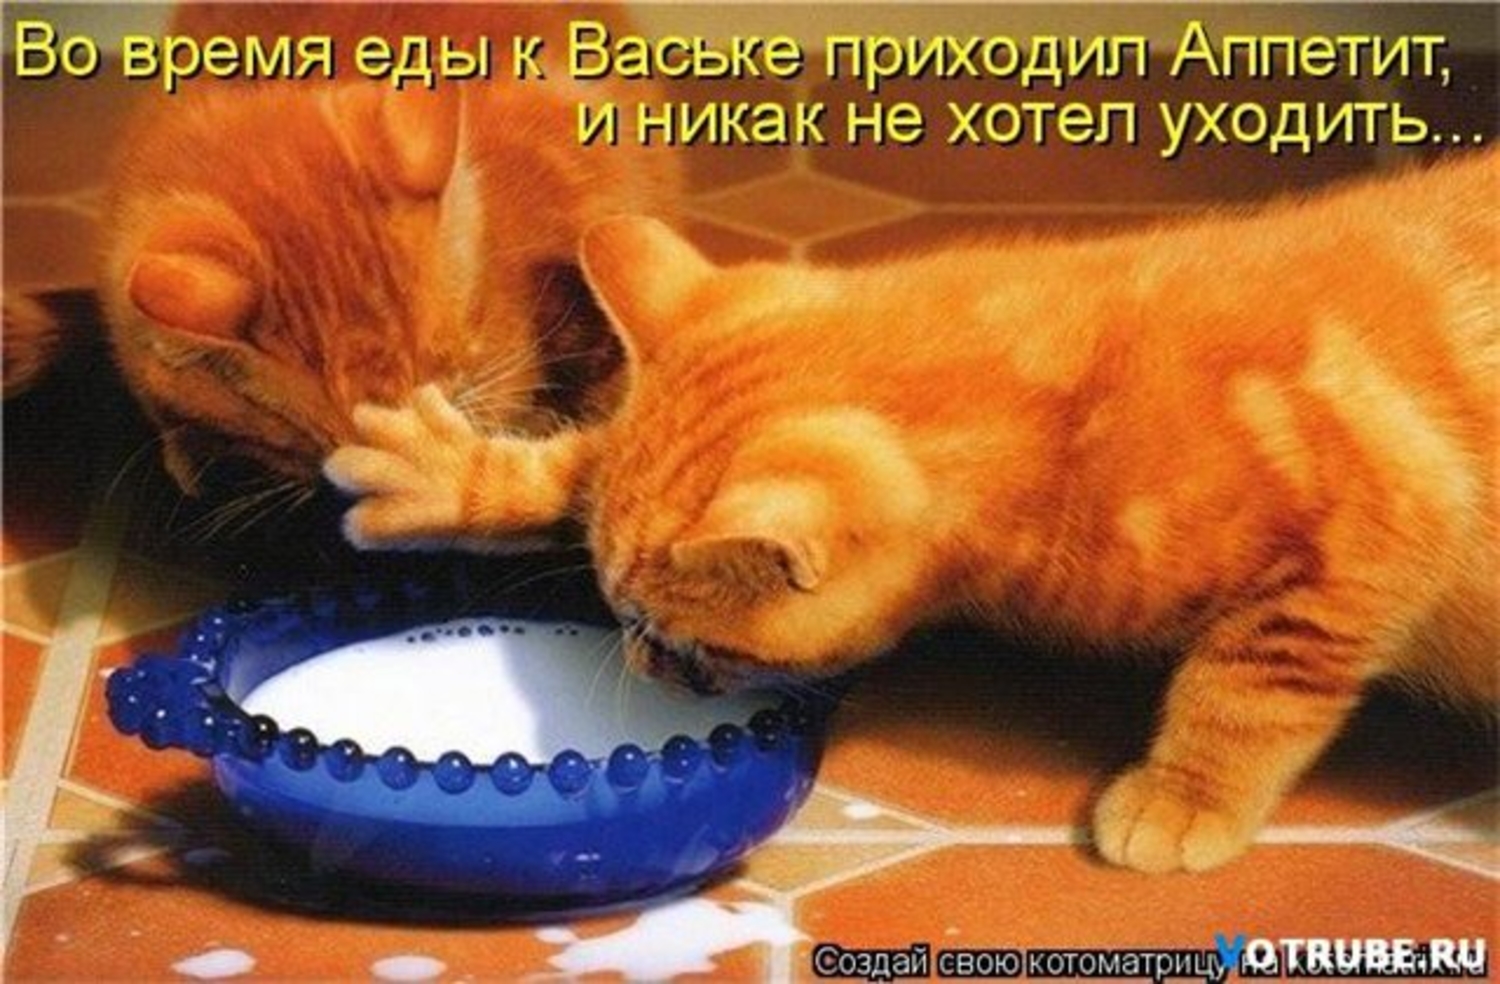 Голодному не хочется. Кот хочет есть. Жадные коты. Миска для кота. Рыжий кот кушает.